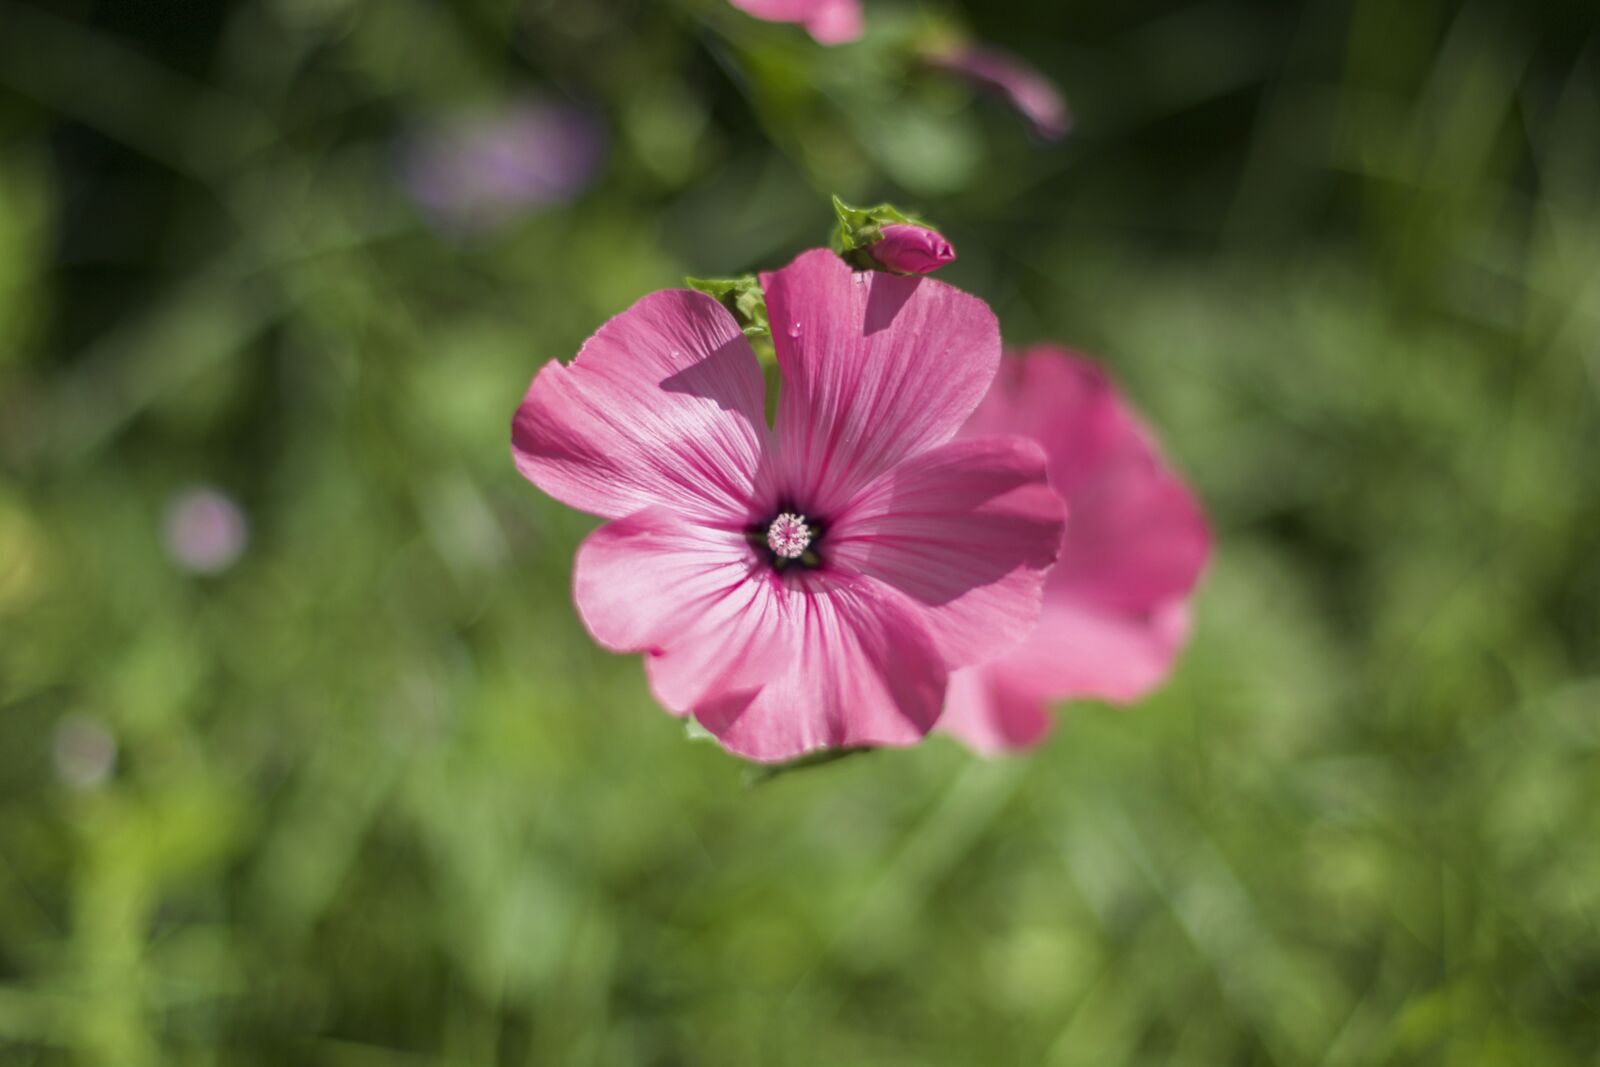 Nikon AF-S Nikkor 50mm F1.4G sample photo. Flower, pink, petals photography